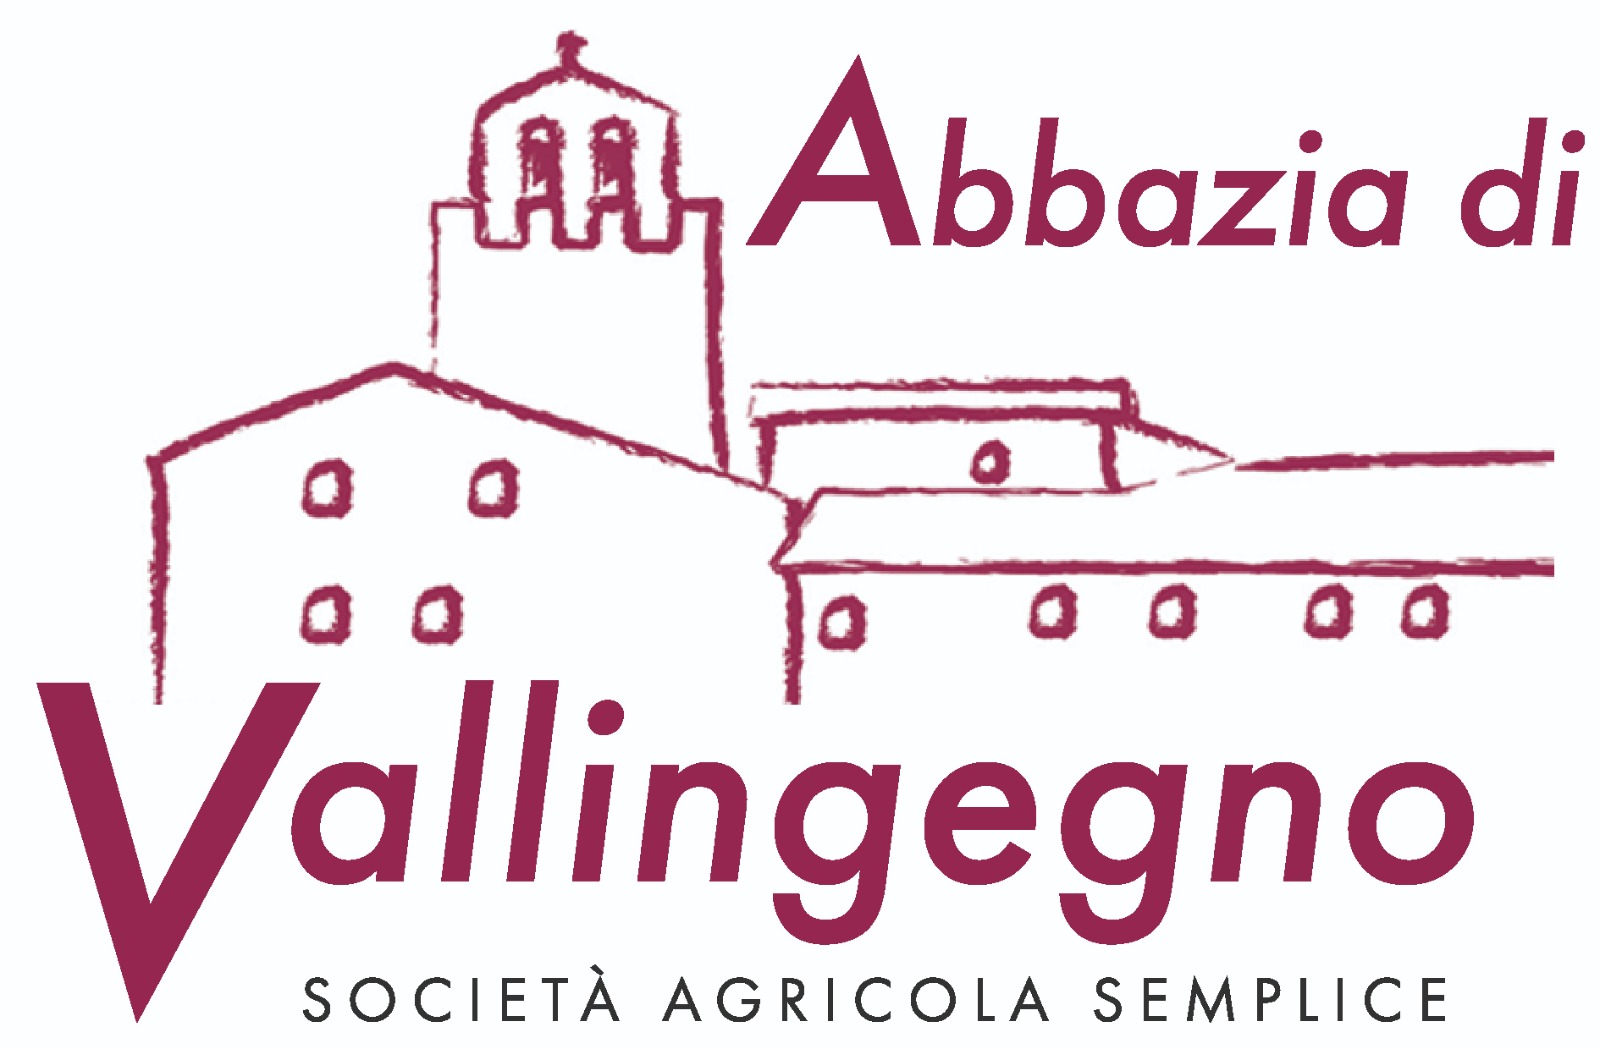 Abbazia di Vallingegno